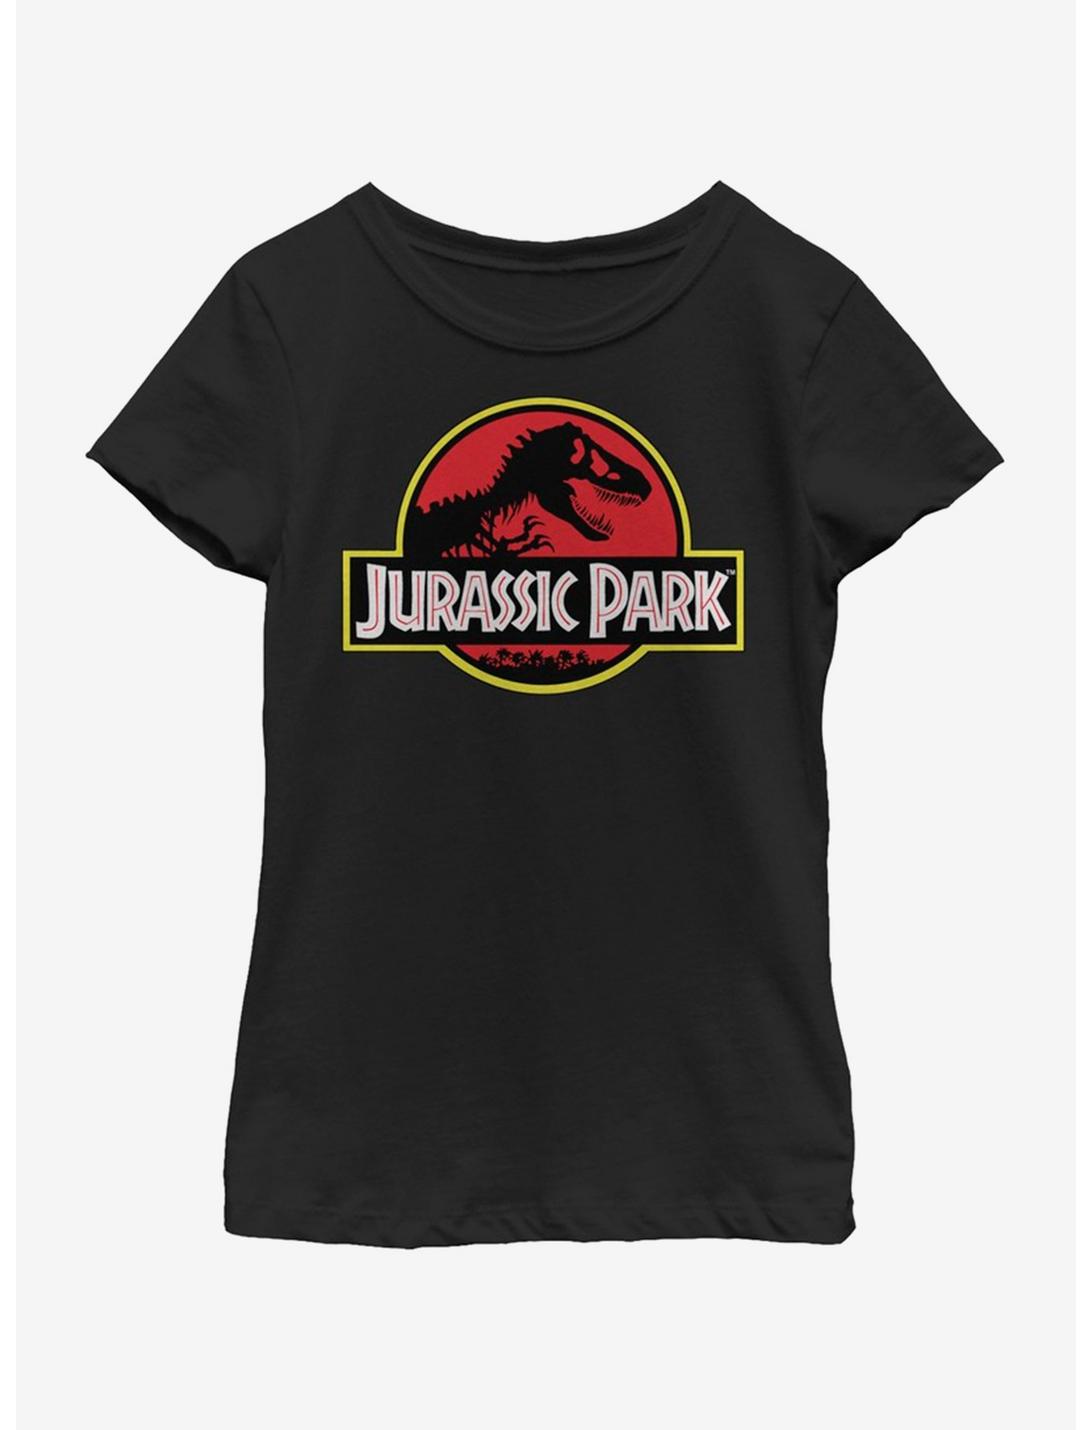 Jurassic Park Park Logo Youth Girls T-Shirt, BLACK, hi-res